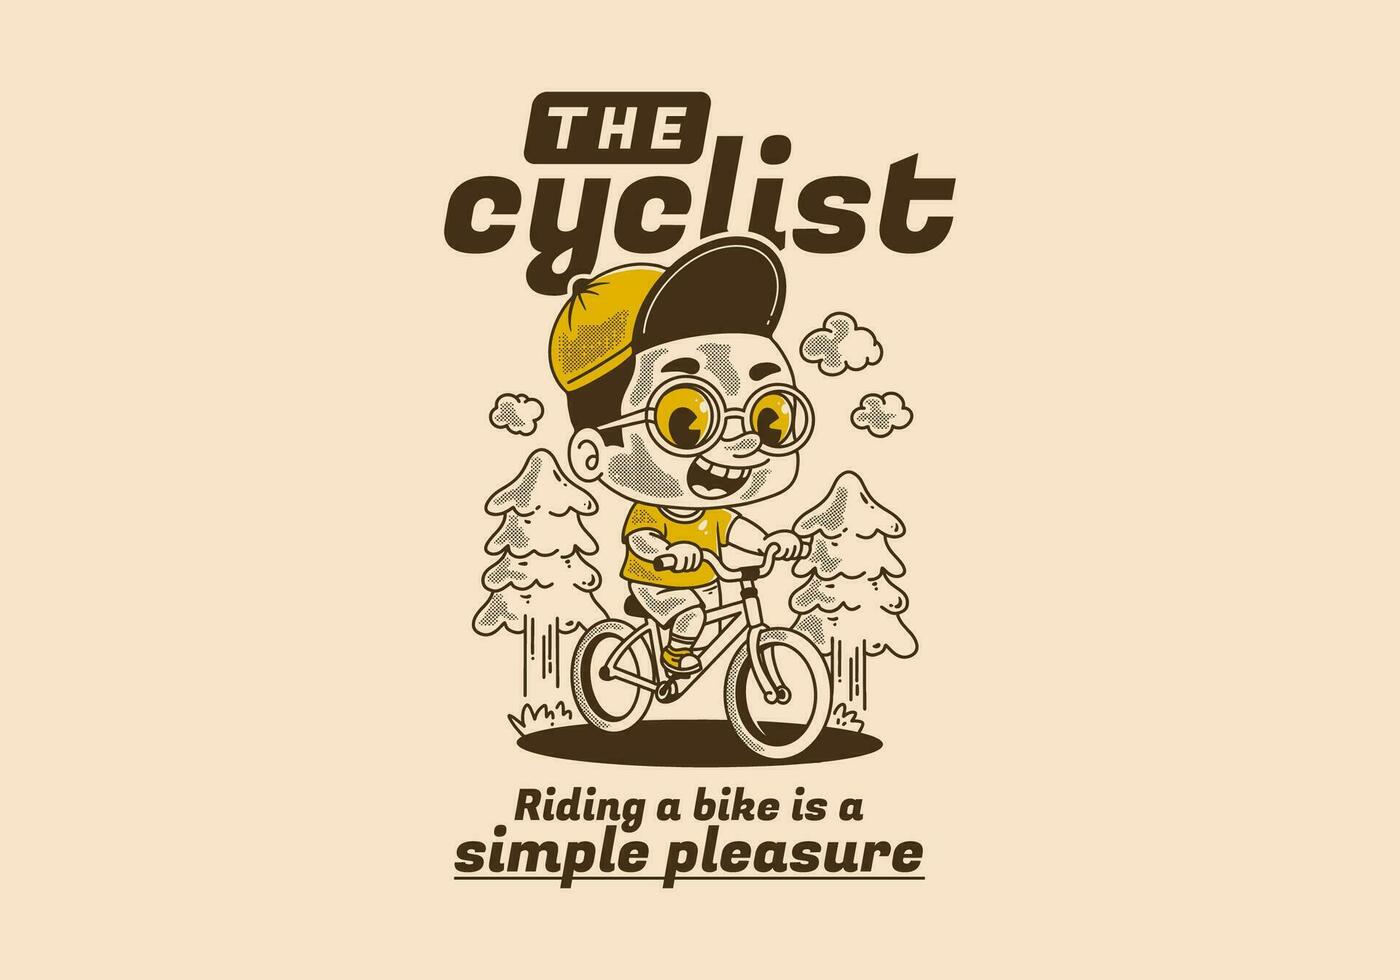 de cyklist, ridning en cykel är en enkel nöje. retro illustration av en pojke ridning cykel, tall träd vektor